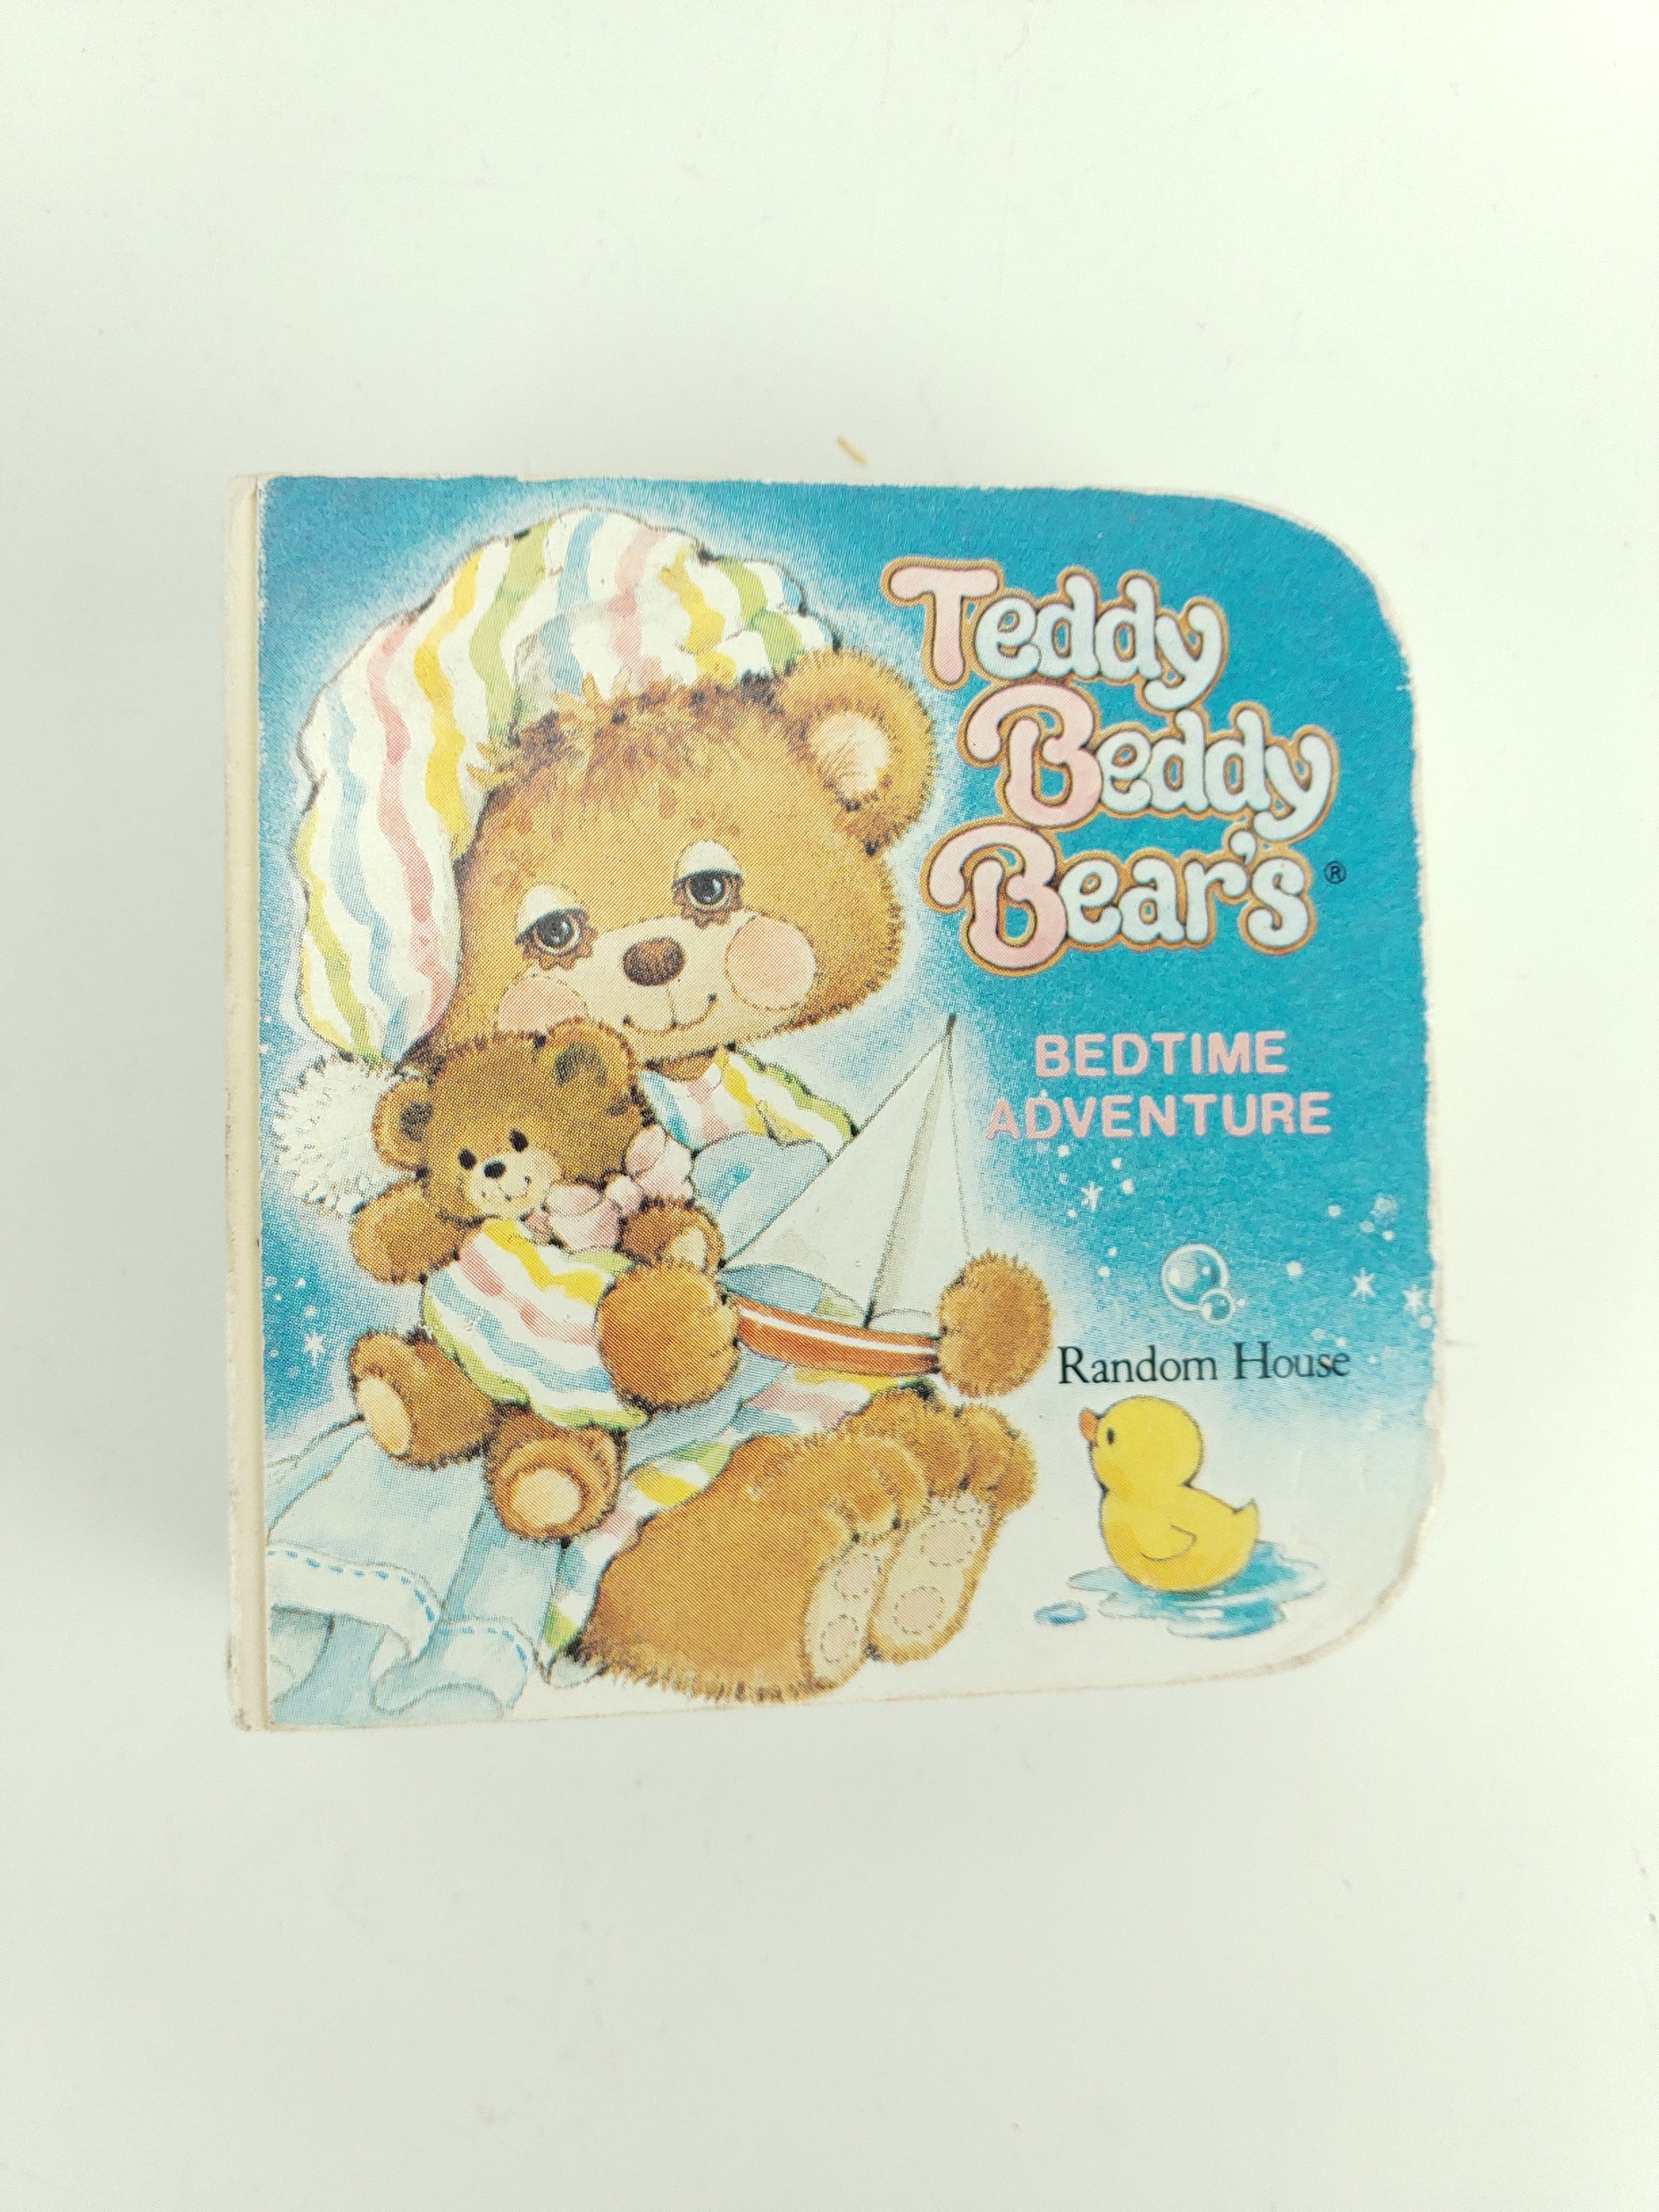 teddy beddy  bear 絵本 ヴィンテージ ファンシー